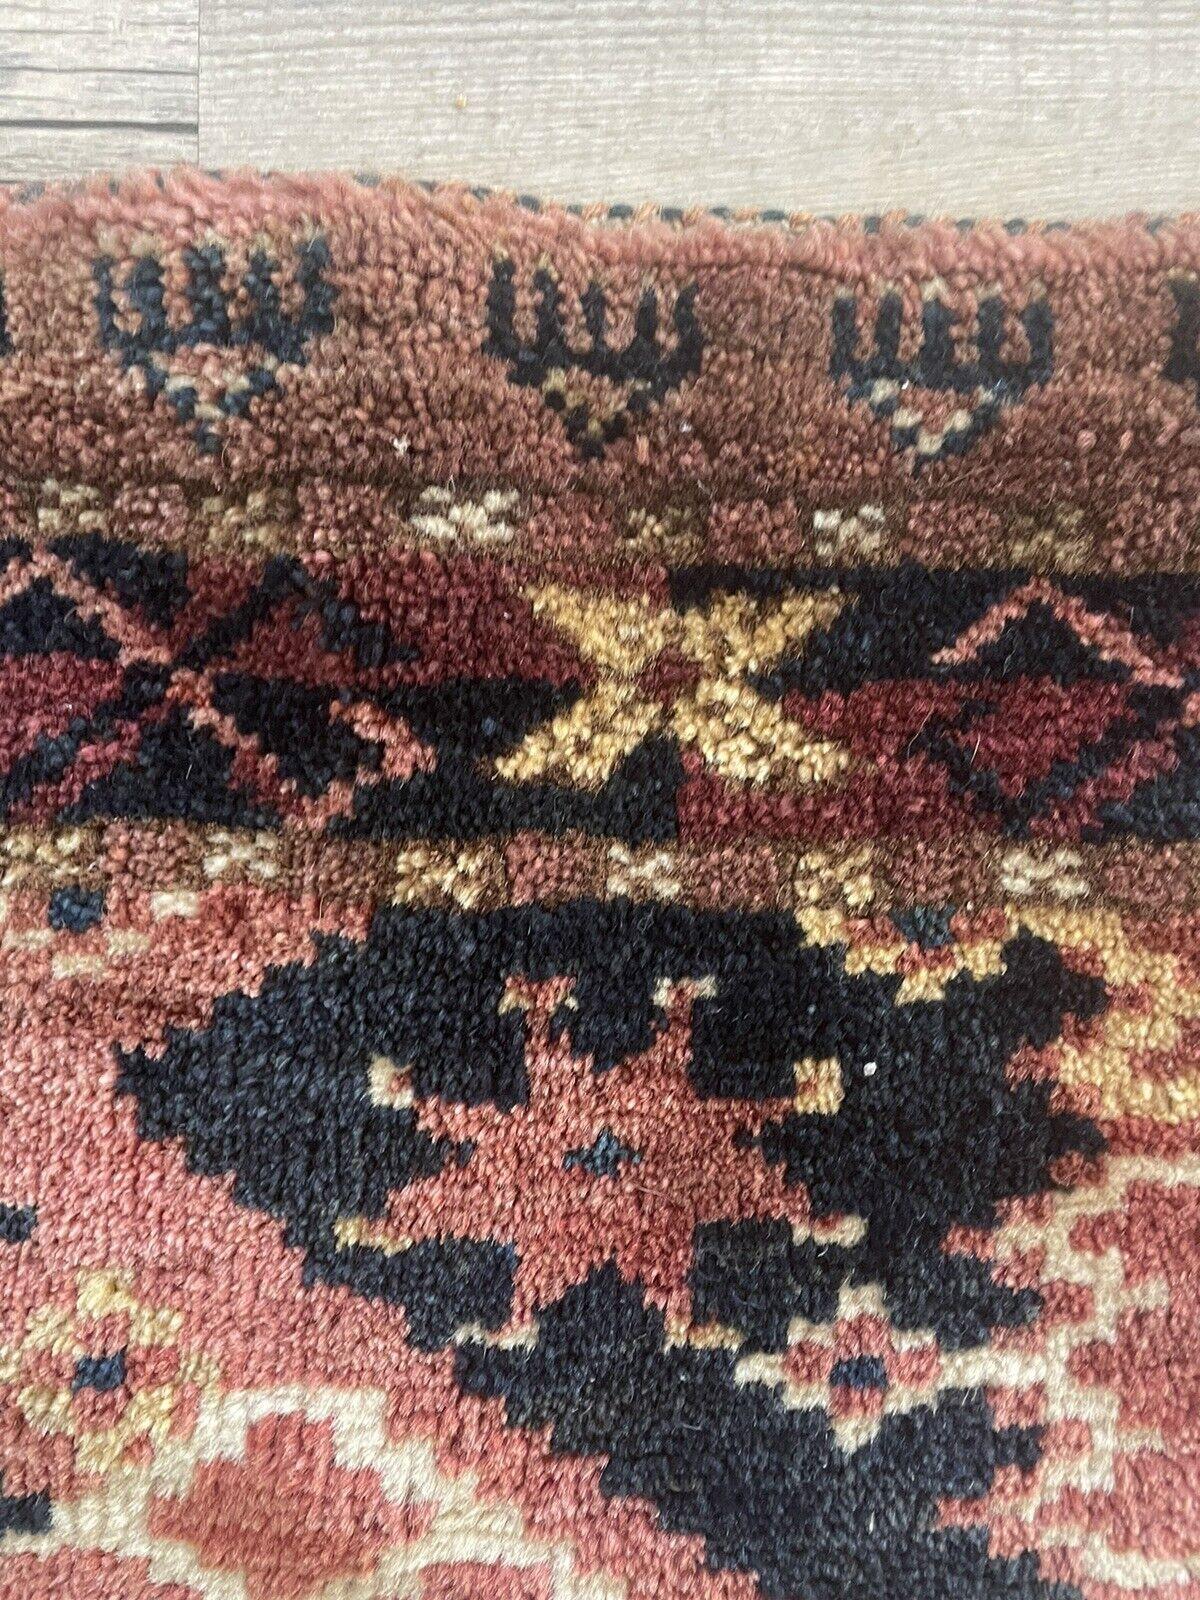 Handgefertigter antiker afghanischer Beshir Collectional Chuval Teppich aus den 1900er Jahren:

Abmessungen:
Dieser rechteckige Tschowal-Teppich misst ungefähr 1,5 Fuß (46 cm) in der Breite und 4,8 Fuß (146 cm) in der Höhe.
Durch seine kompakte